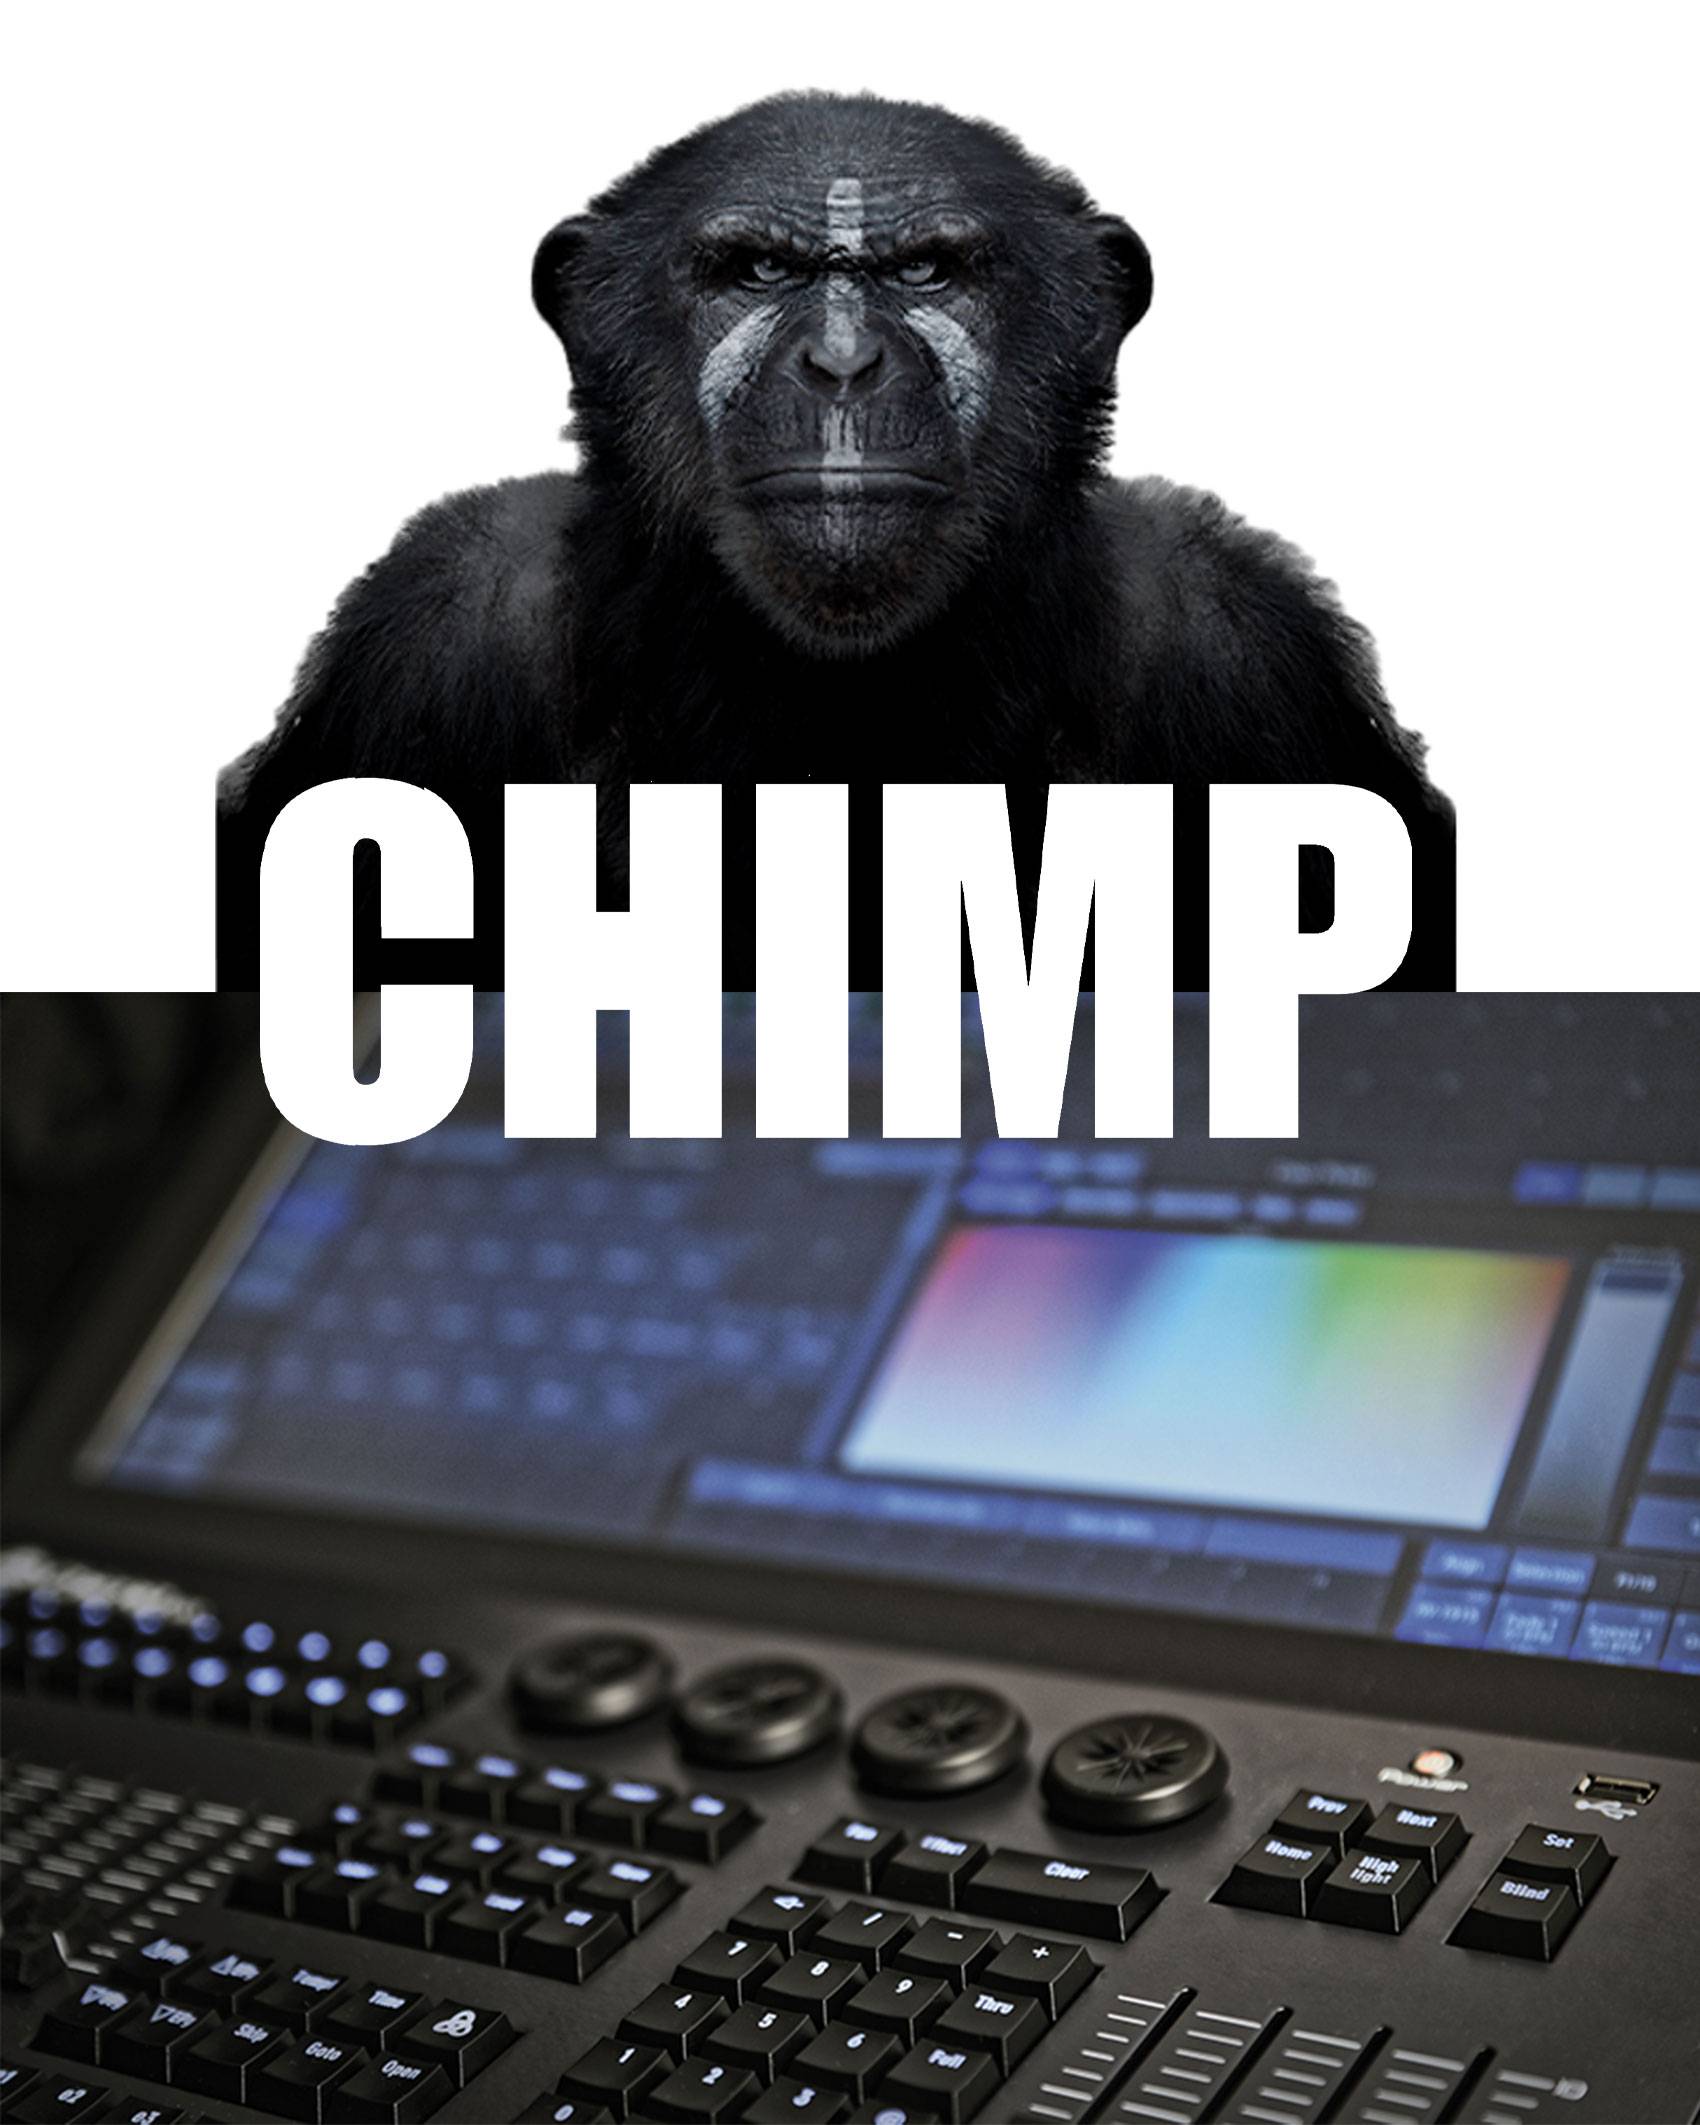 Contrôlez votre éclairage avec la formation Chimp Infinity